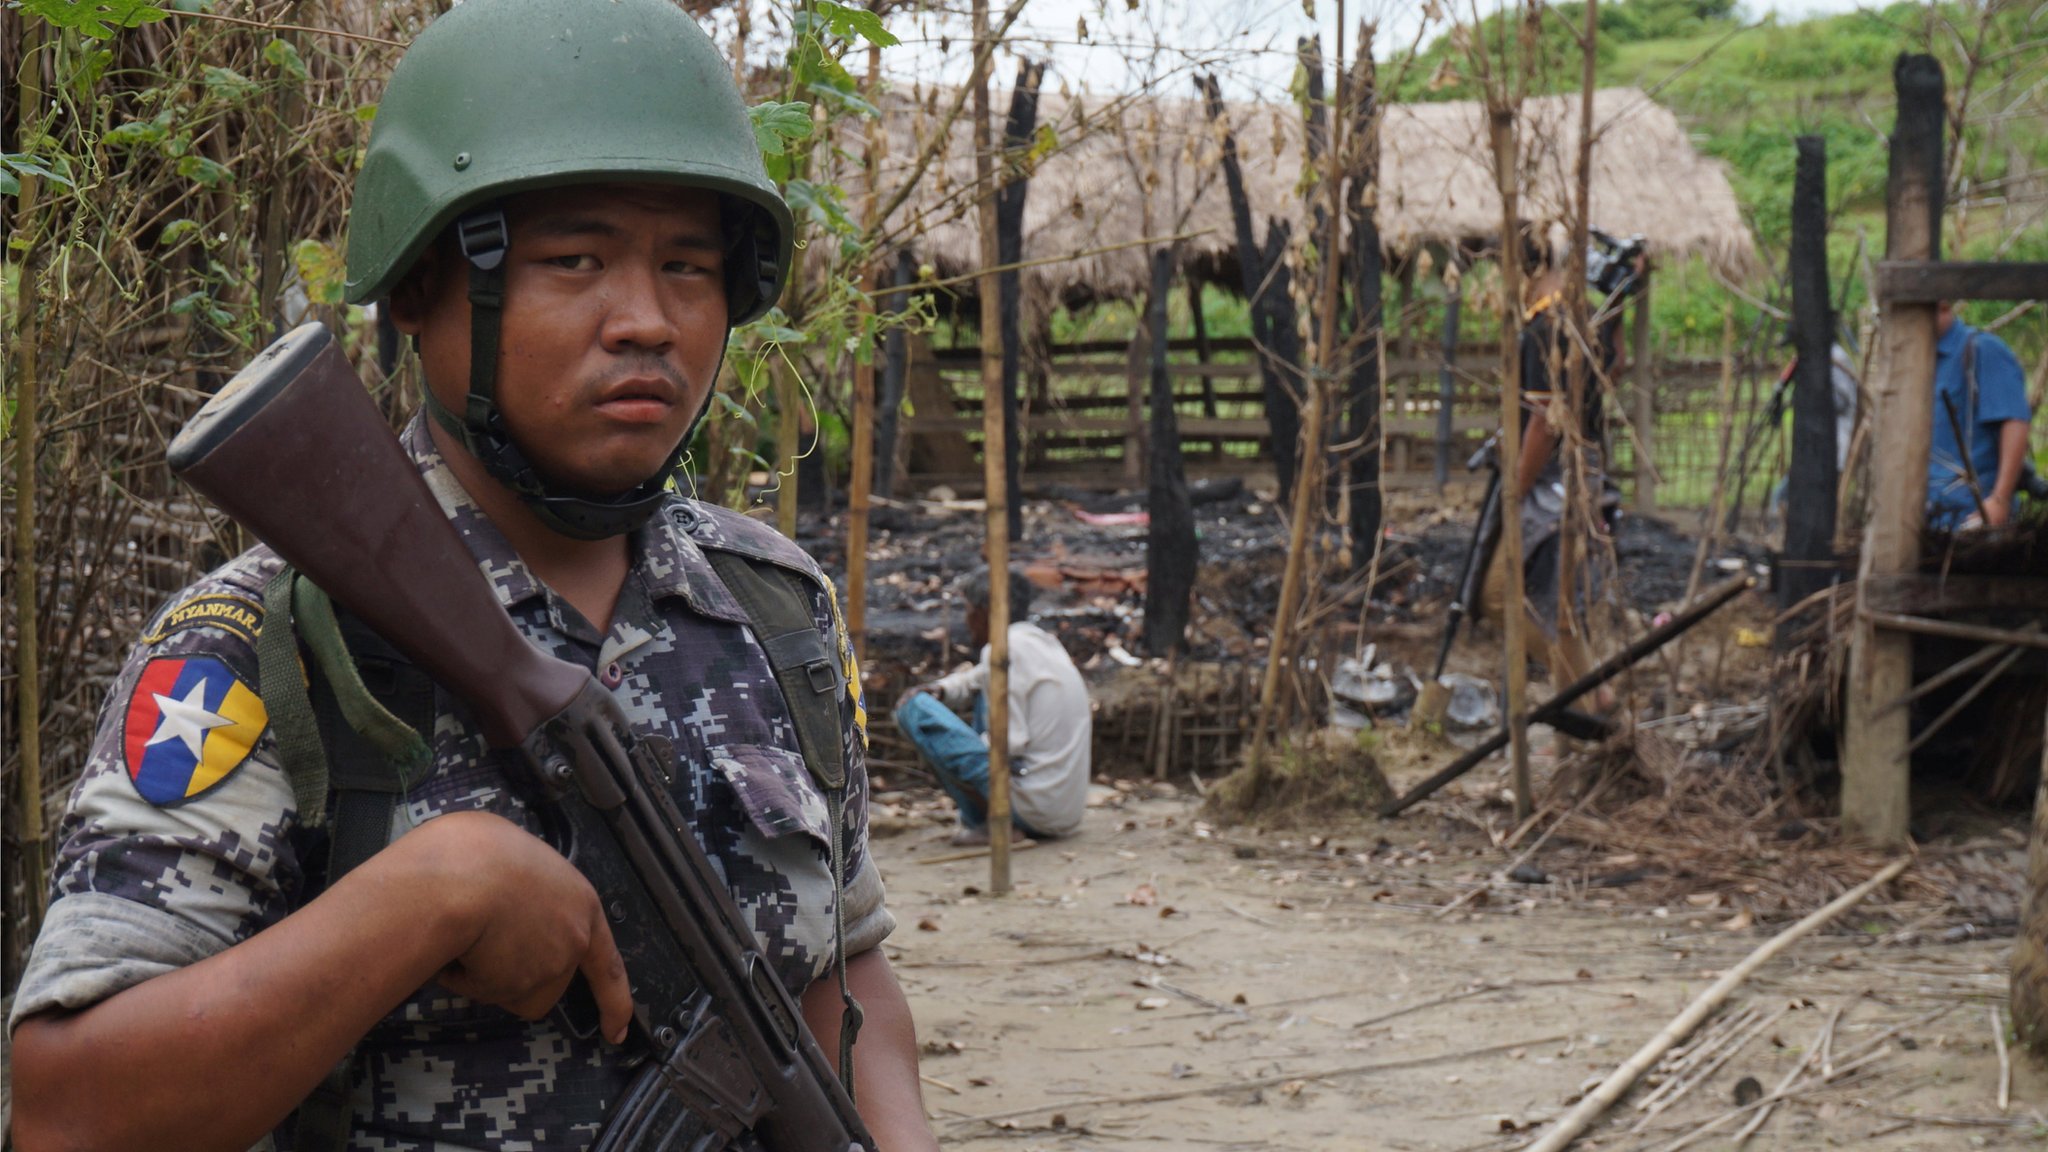 Офицер пограничной службы Мьянмы стоит на страже перед остатками дома, сгоревшего в результате столкновения между предполагаемыми боевиками и силами безопасности в деревне Тин Мэй, поселок Бутхидаунг, северный штат Ракхайн, Мьянма 14 июля 2017 г.